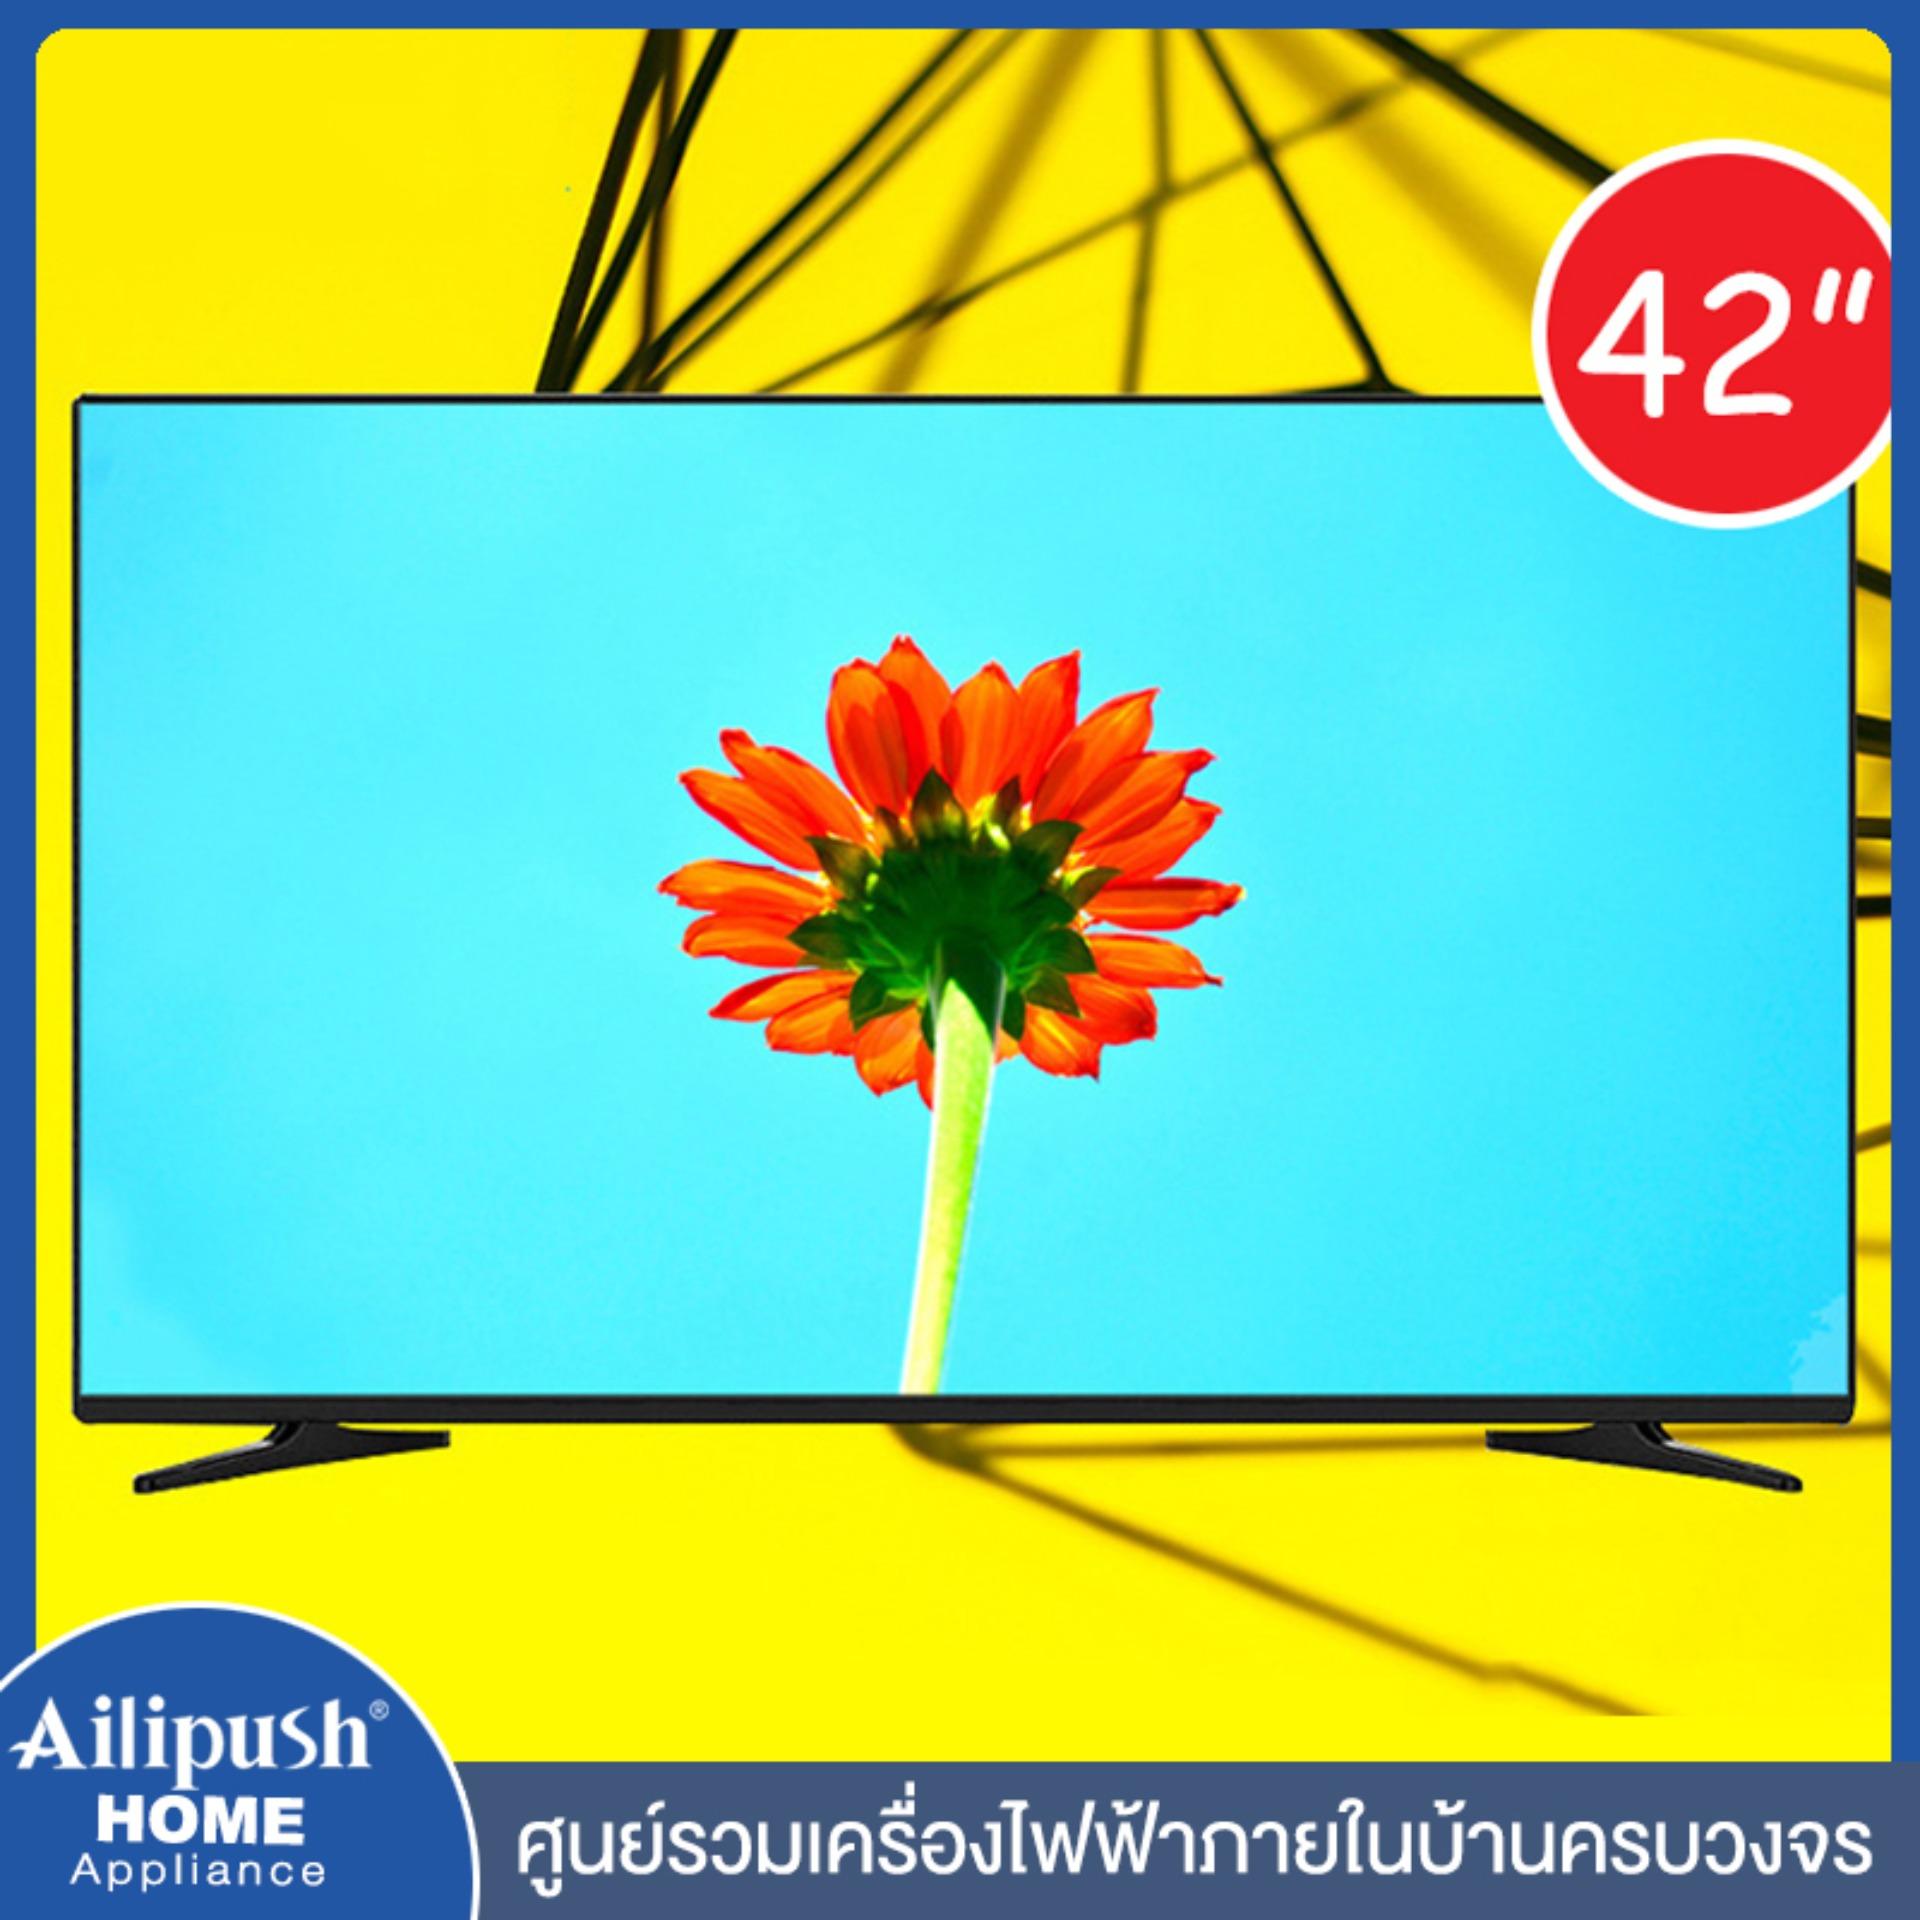 Ailipush แอนดรอยด์ทีวี LCD 4K UHD  จอ 4K  32 นิ้ว และ 42 นิ้ว 32 inch, 42 inch 4k LCD TV